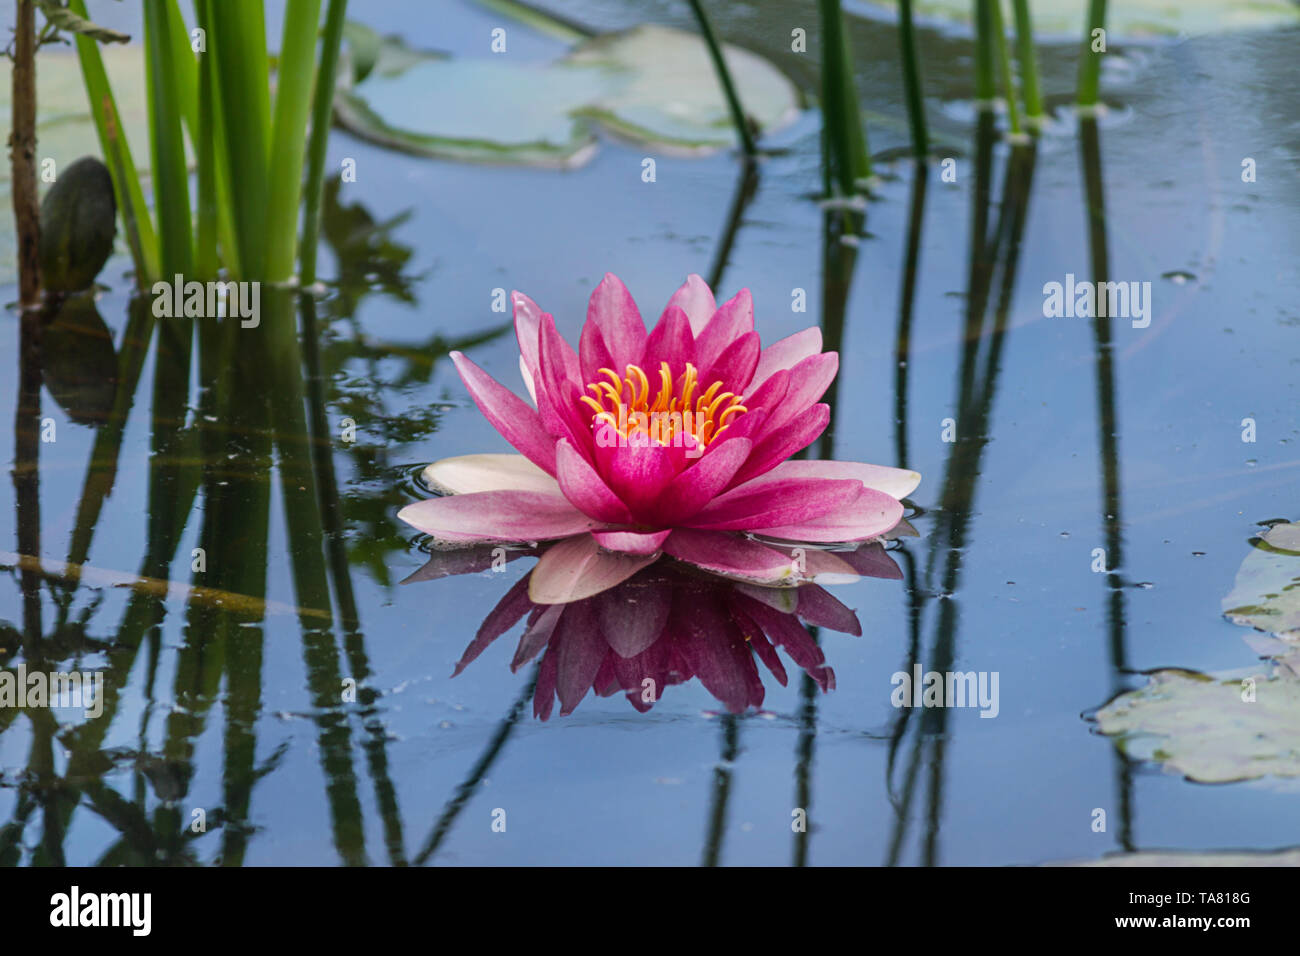 Hermosa rosa flor de loto en el lago de agua en el fondo del parque Foto de stock